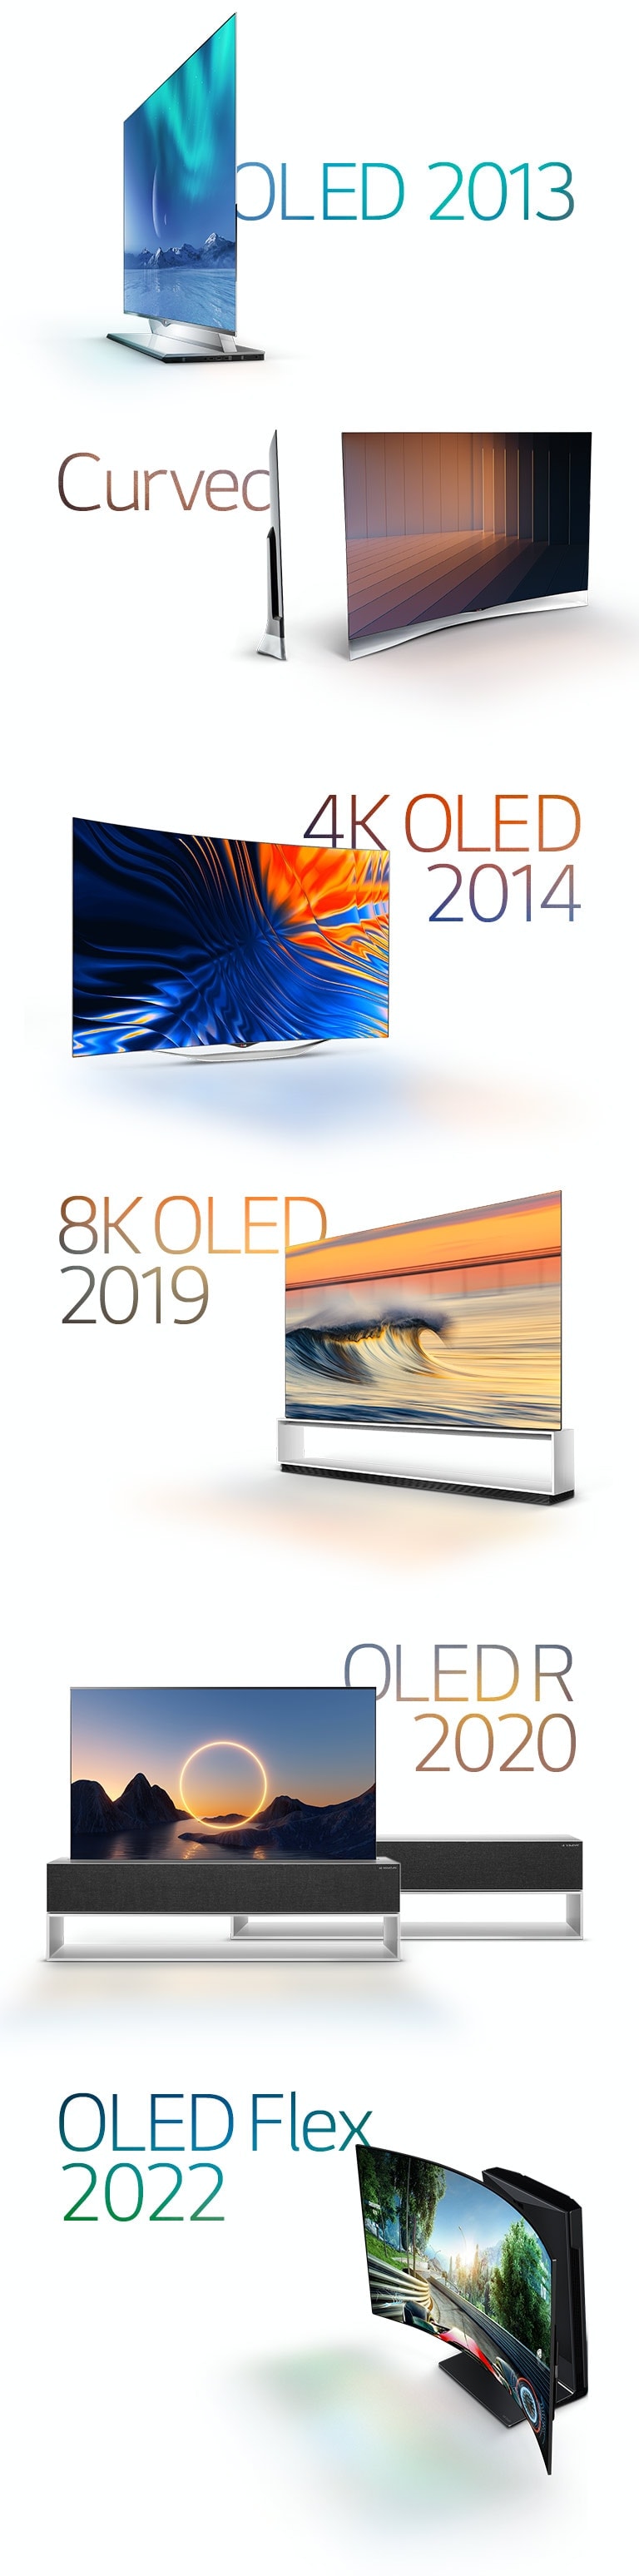 Imágenes de los LG OLED: el OLED curvo de 2013, el OLED 4K de 2014, el OLED 8K de 2019, el OLED enrollable de 2020 y el LG OLED Flex de 2022.